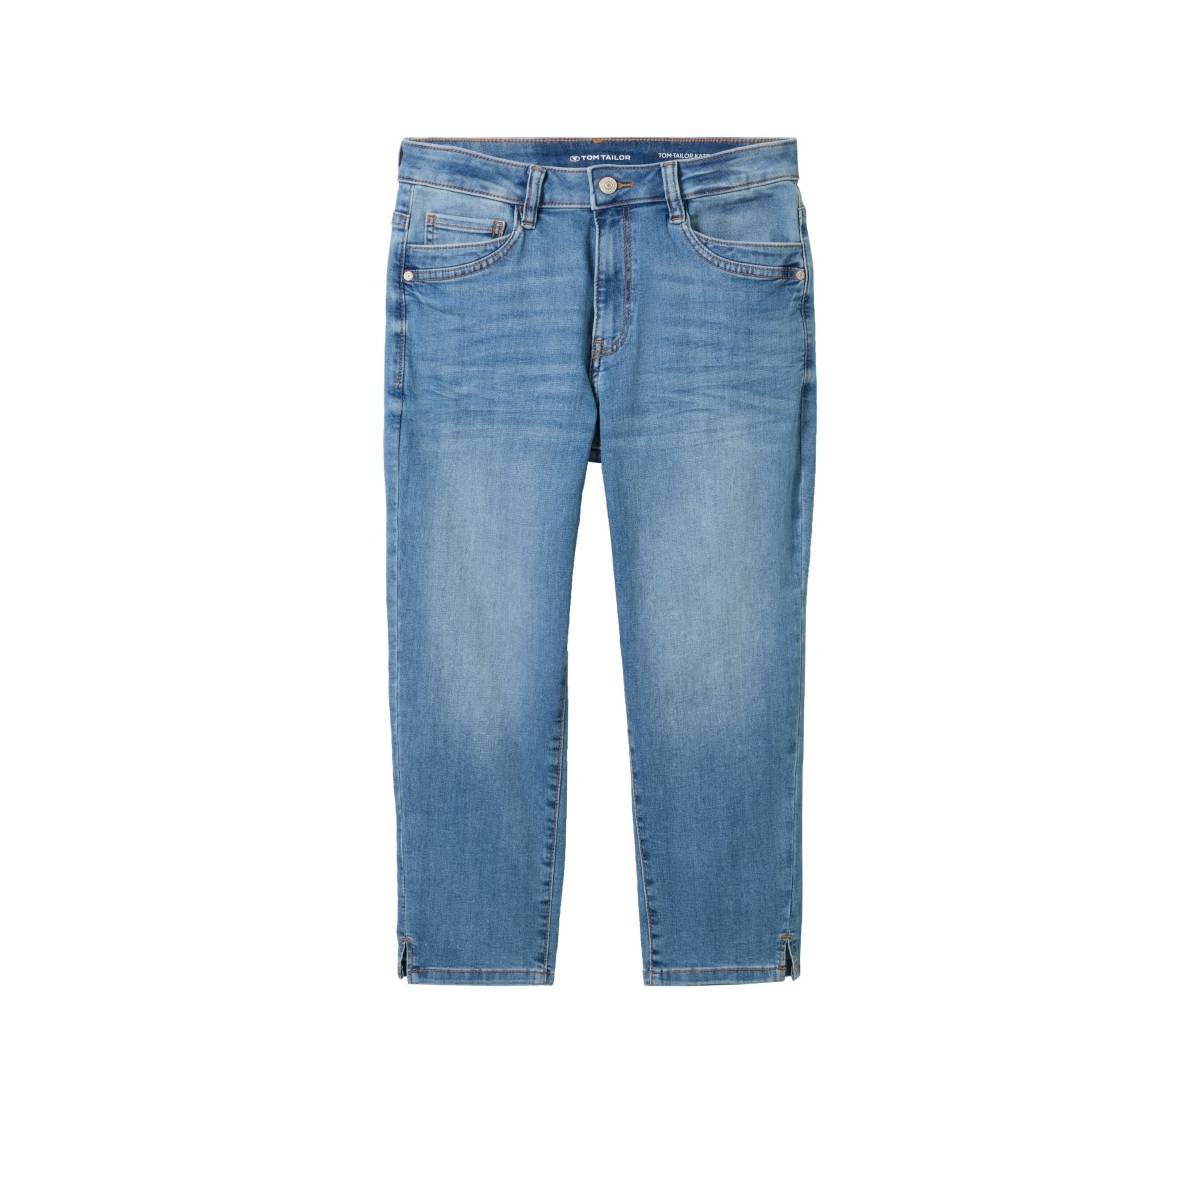 TOM TAILOR  broeken lichte jeans -  model 1041015 - Dameskleding broeken jeans